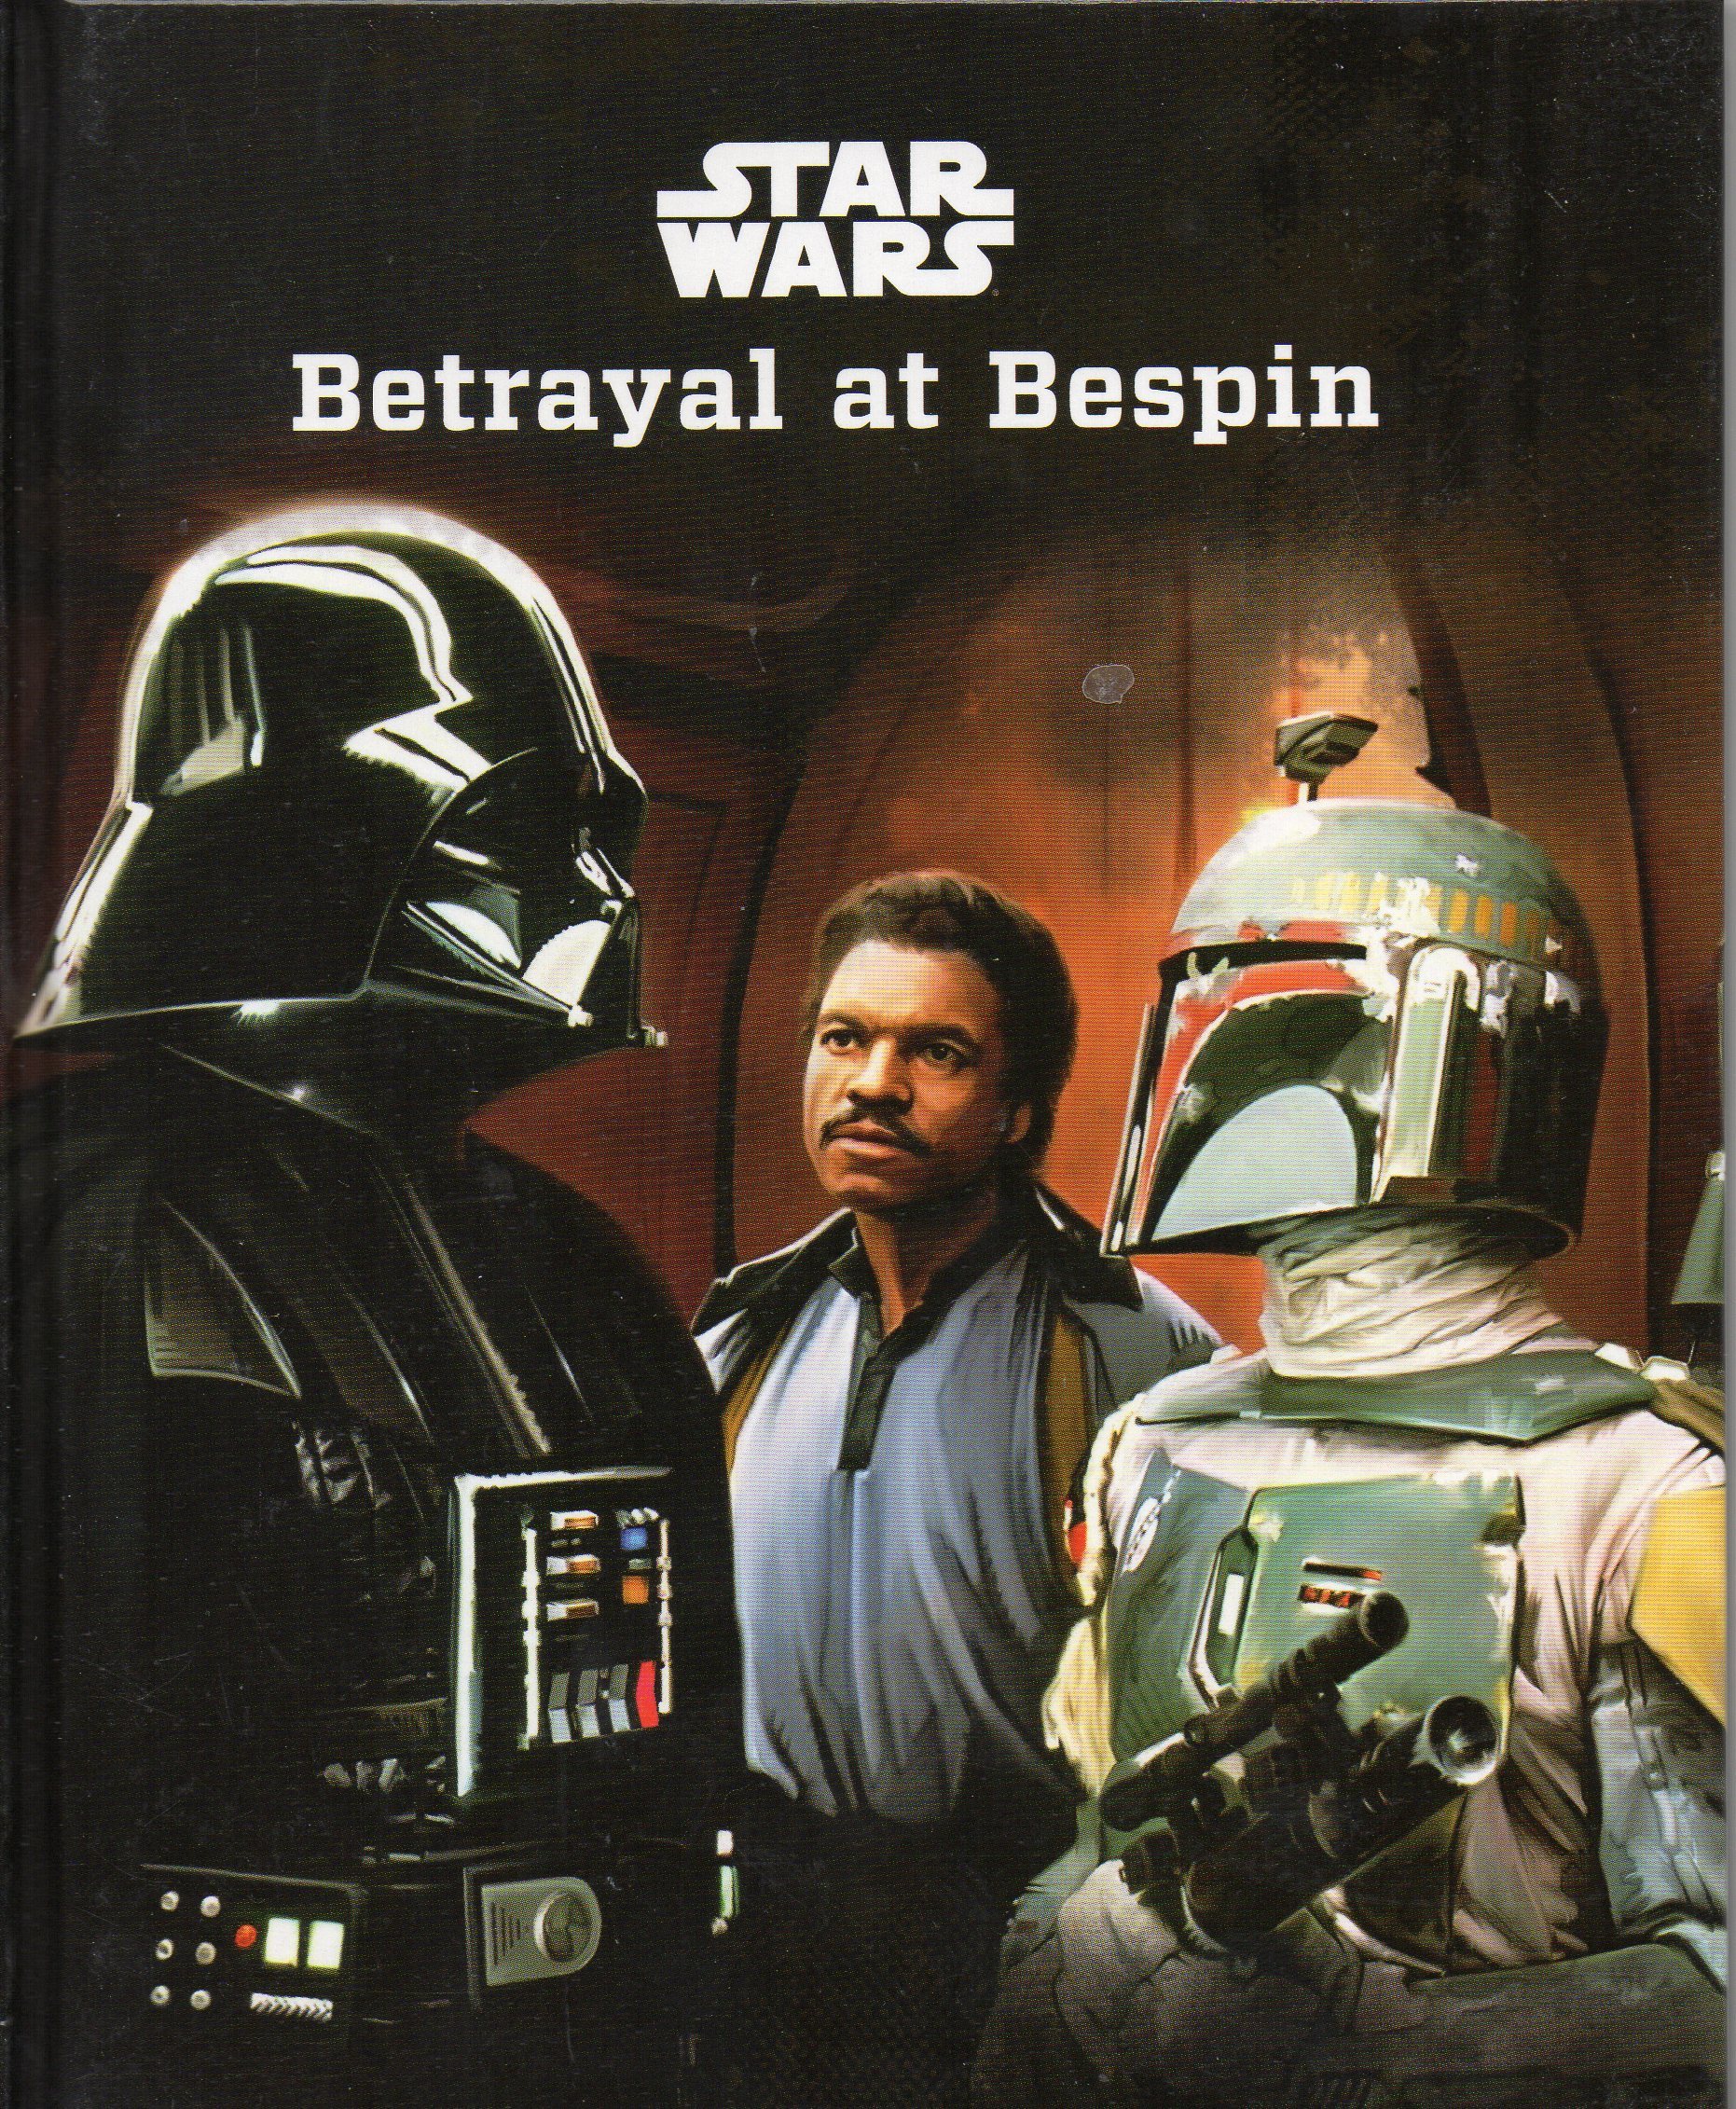 Star Wars: Betrayal at Bespin